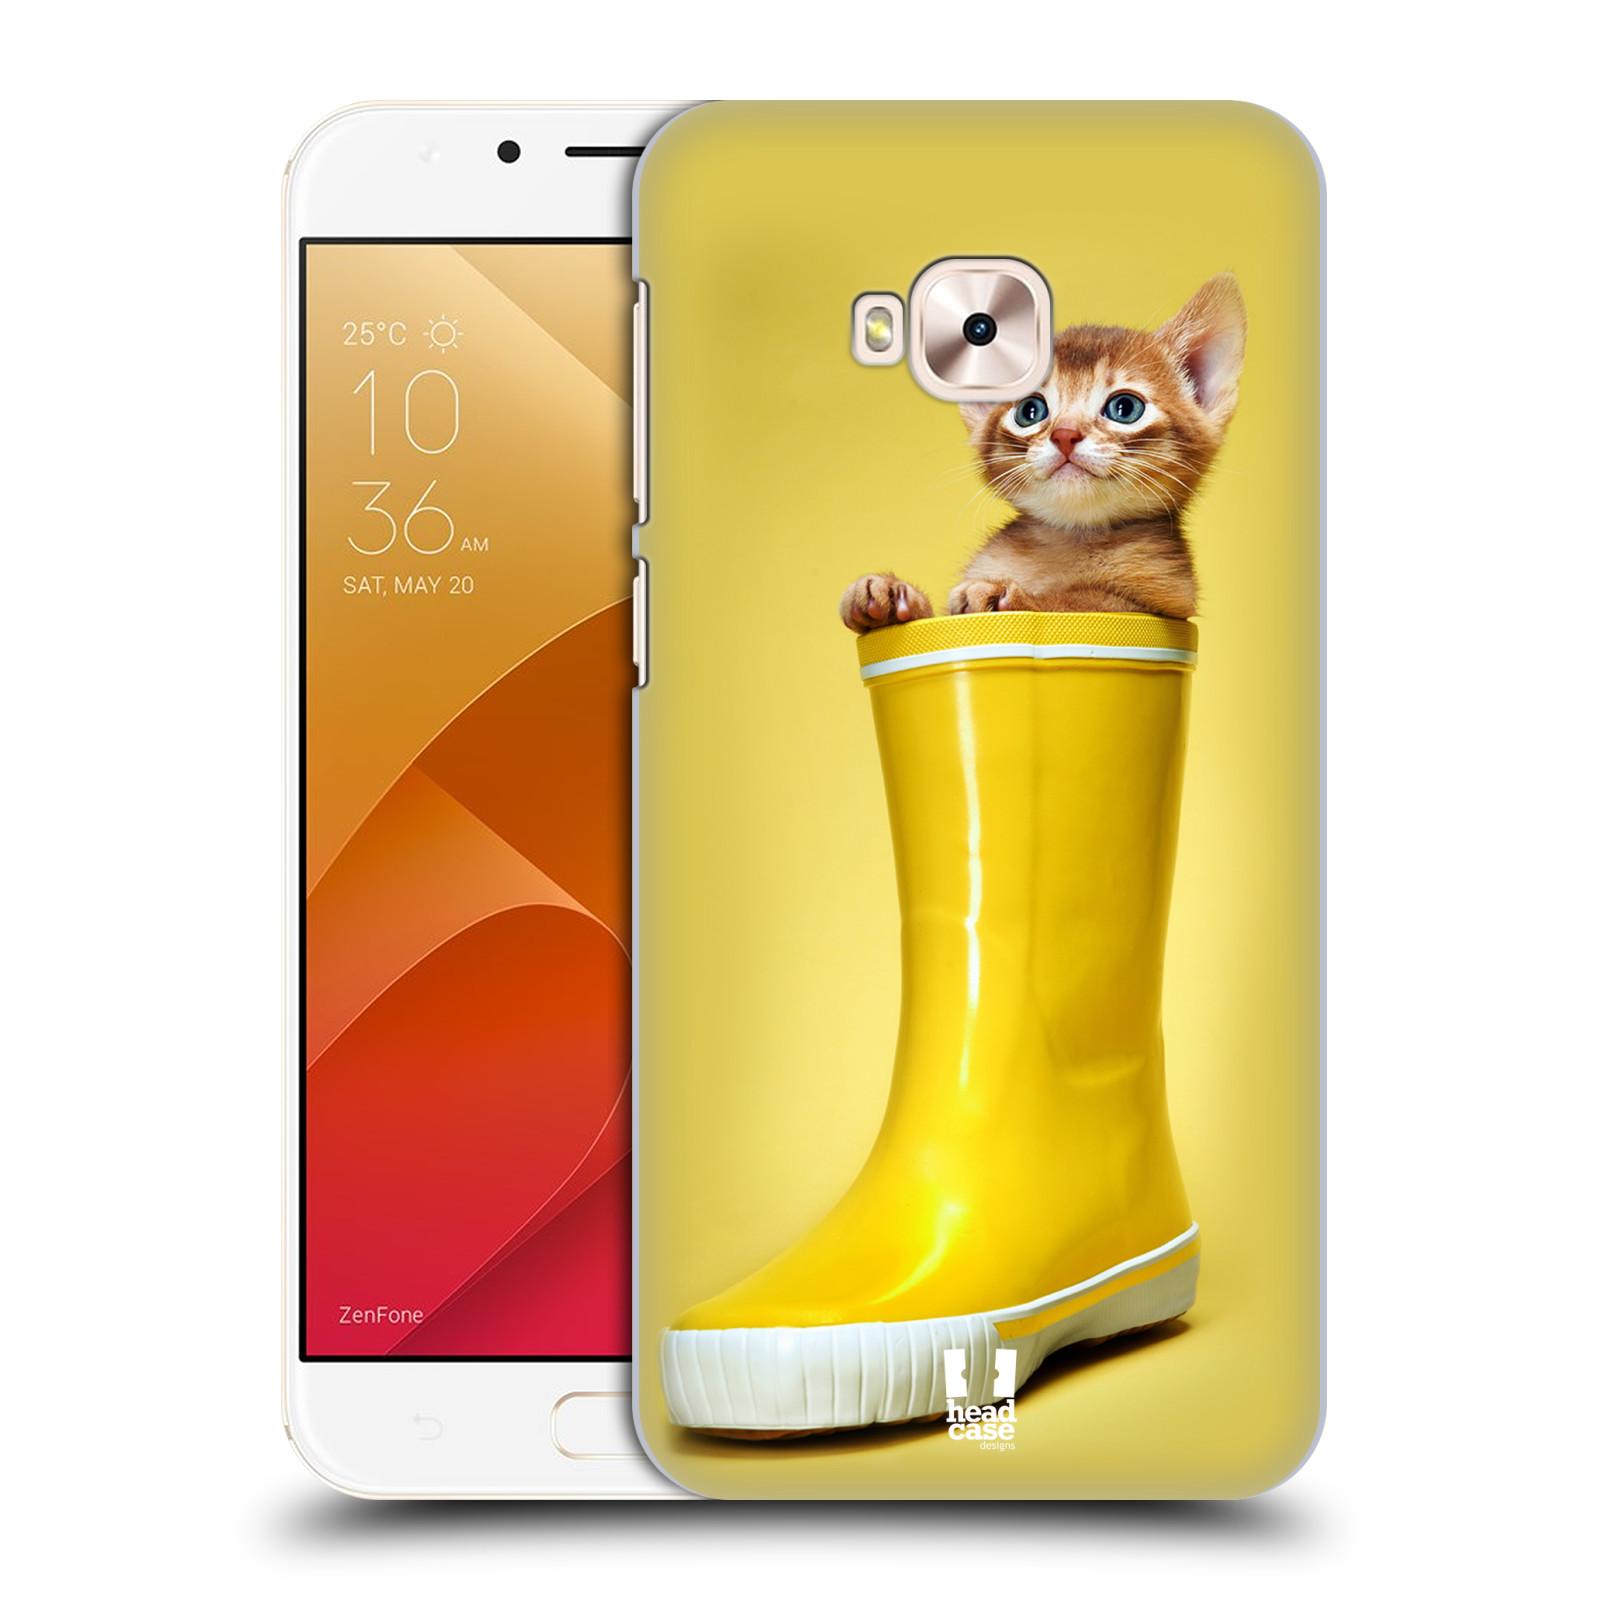 HEAD CASE plastový obal na mobil Asus Zenfone 4 Selfie Pro ZD552KL vzor Legrační zvířátka kotě v botě žlutá